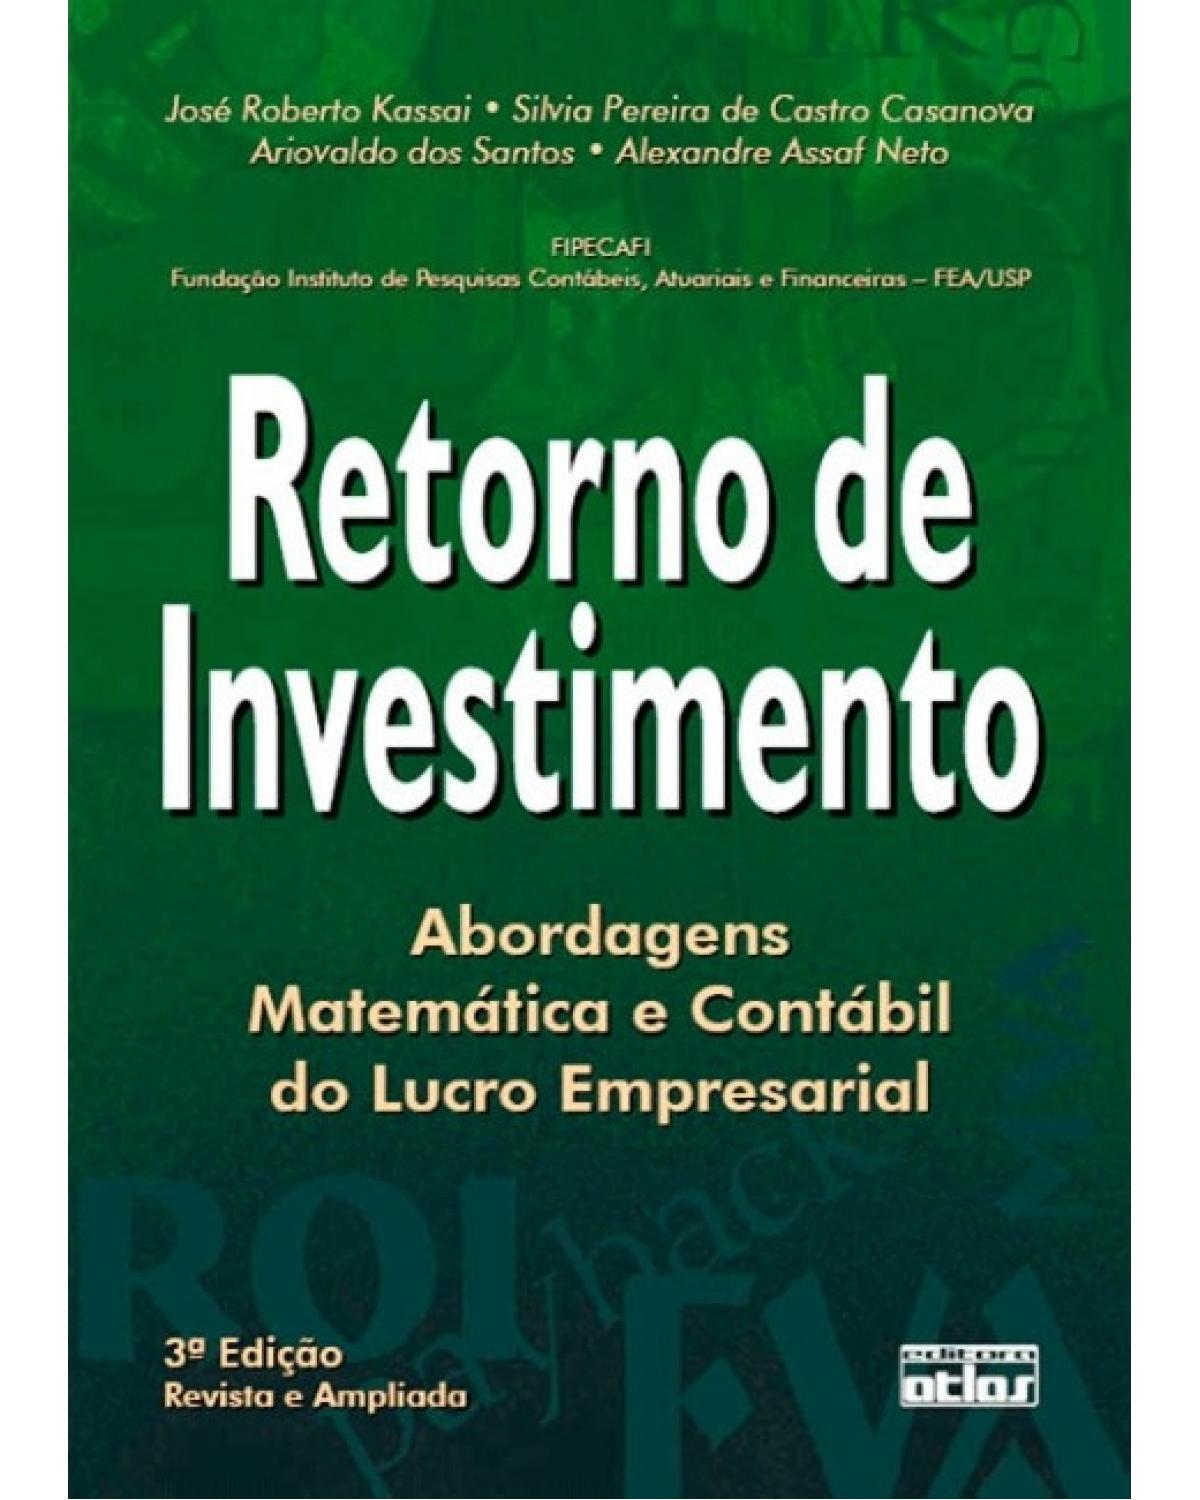 Retorno de investimento - Abordagem matemática e contábil do lucro empresarial - 3ª Edição | 2005